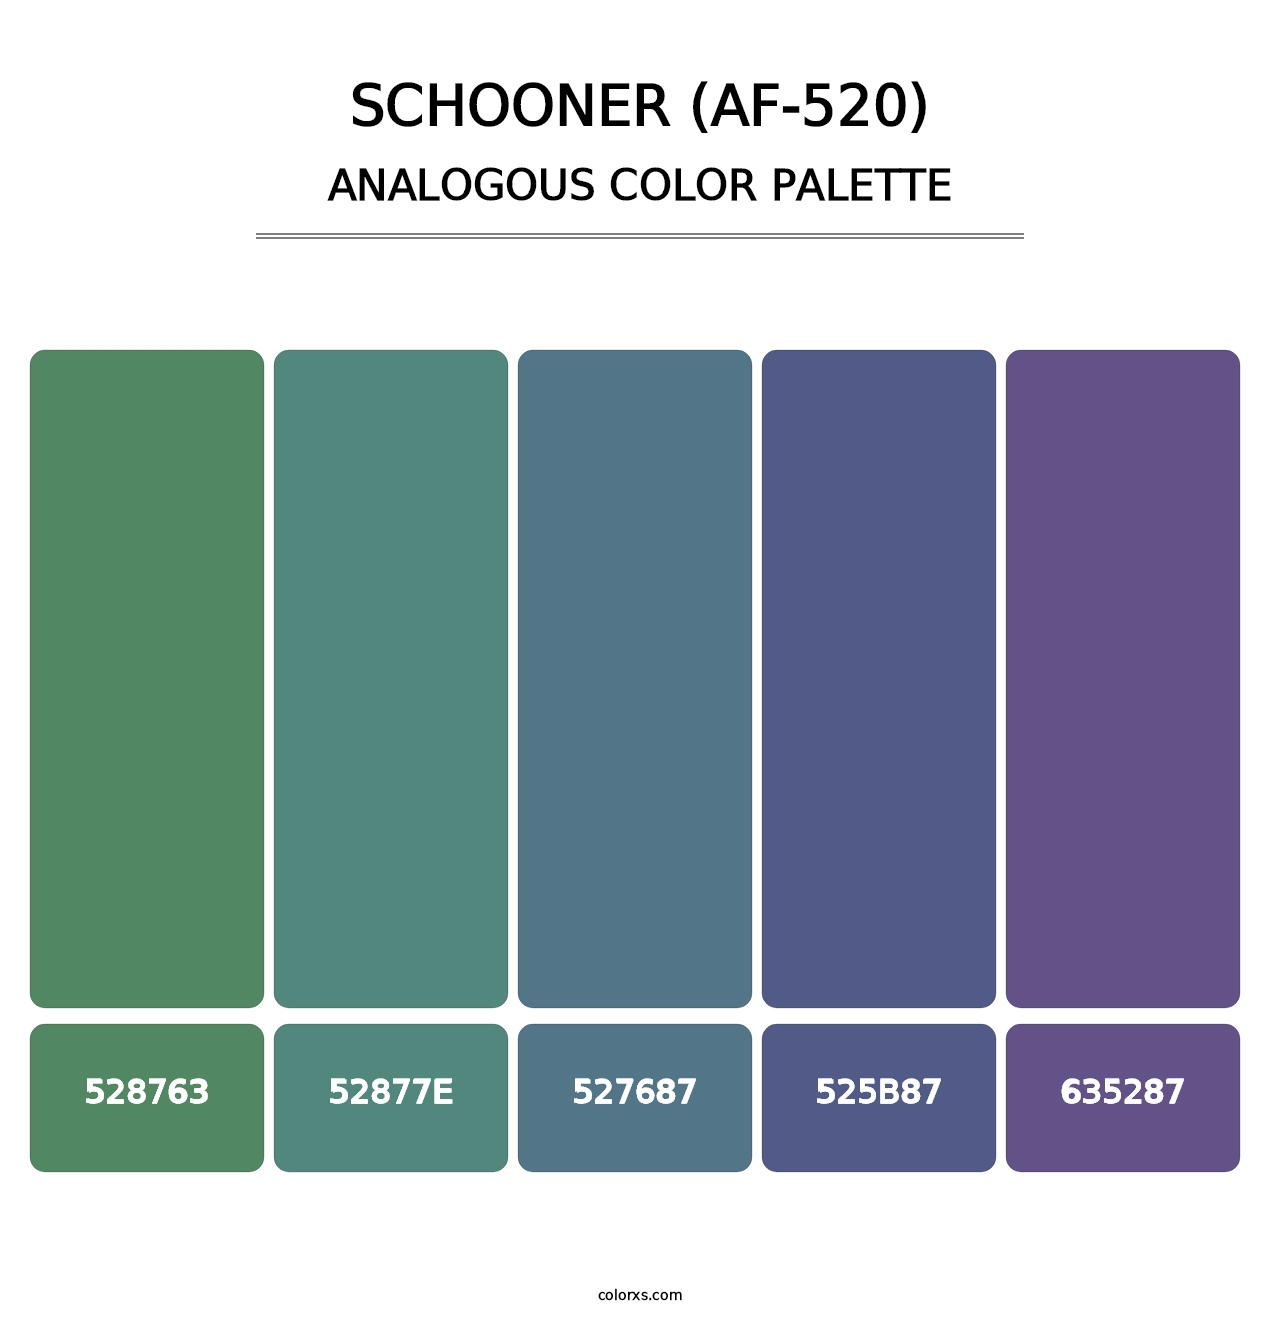 Schooner (AF-520) - Analogous Color Palette